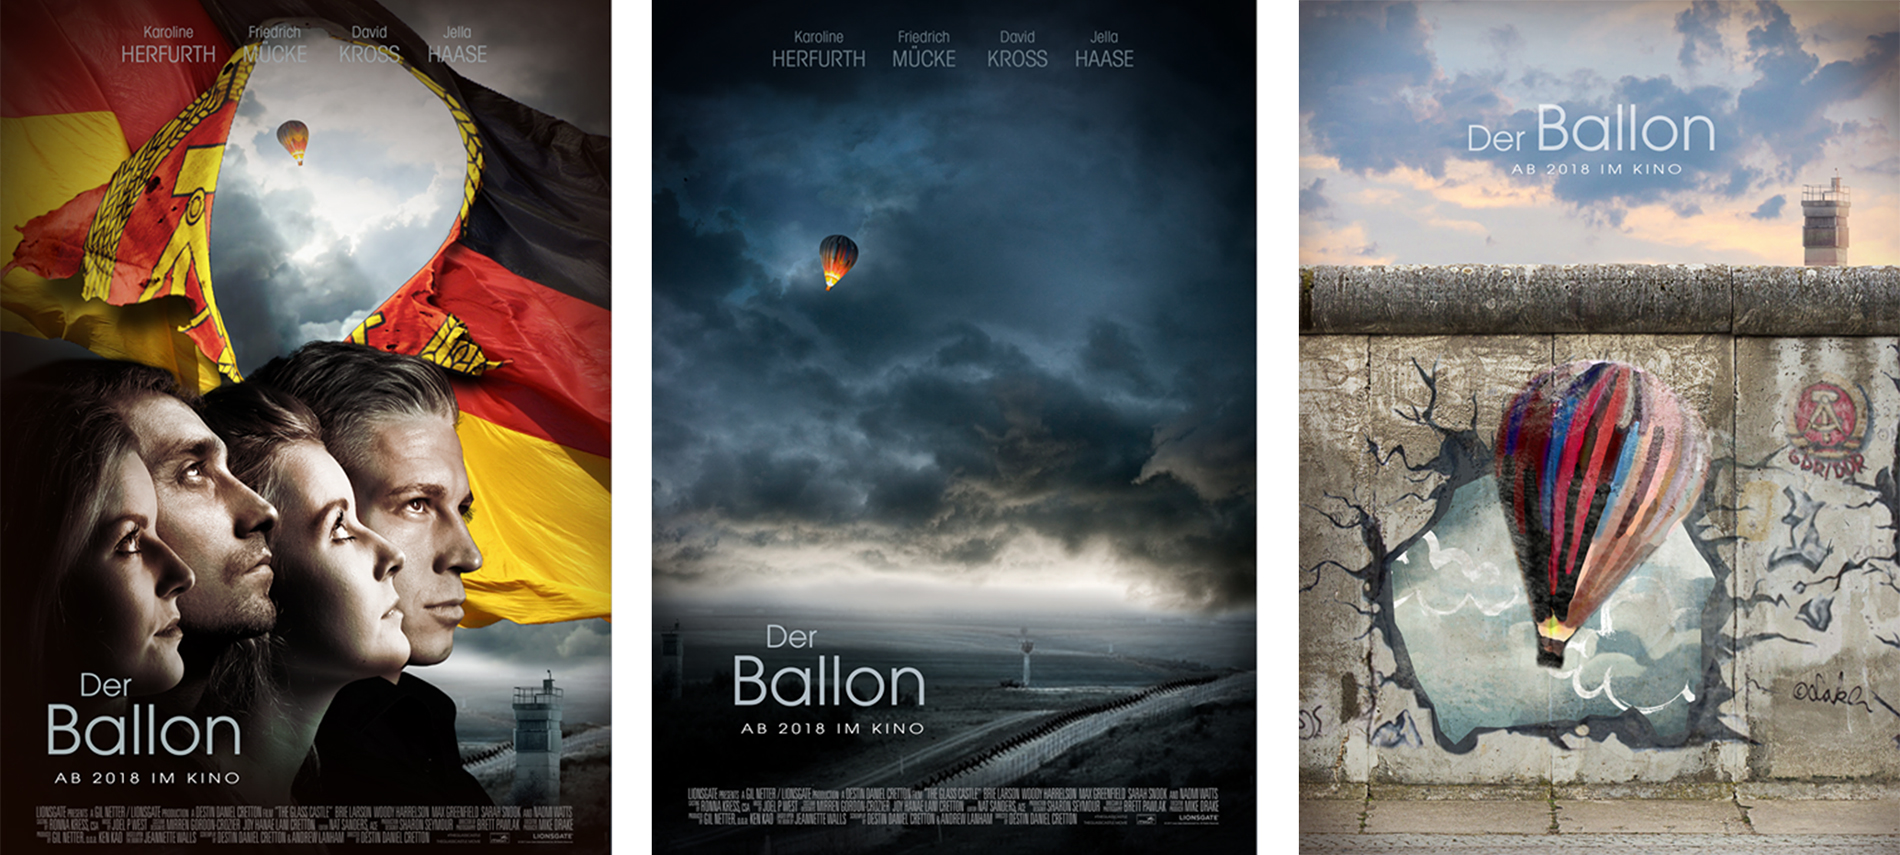 Affiche du film allemand "Der Ballon" - propositions non finales